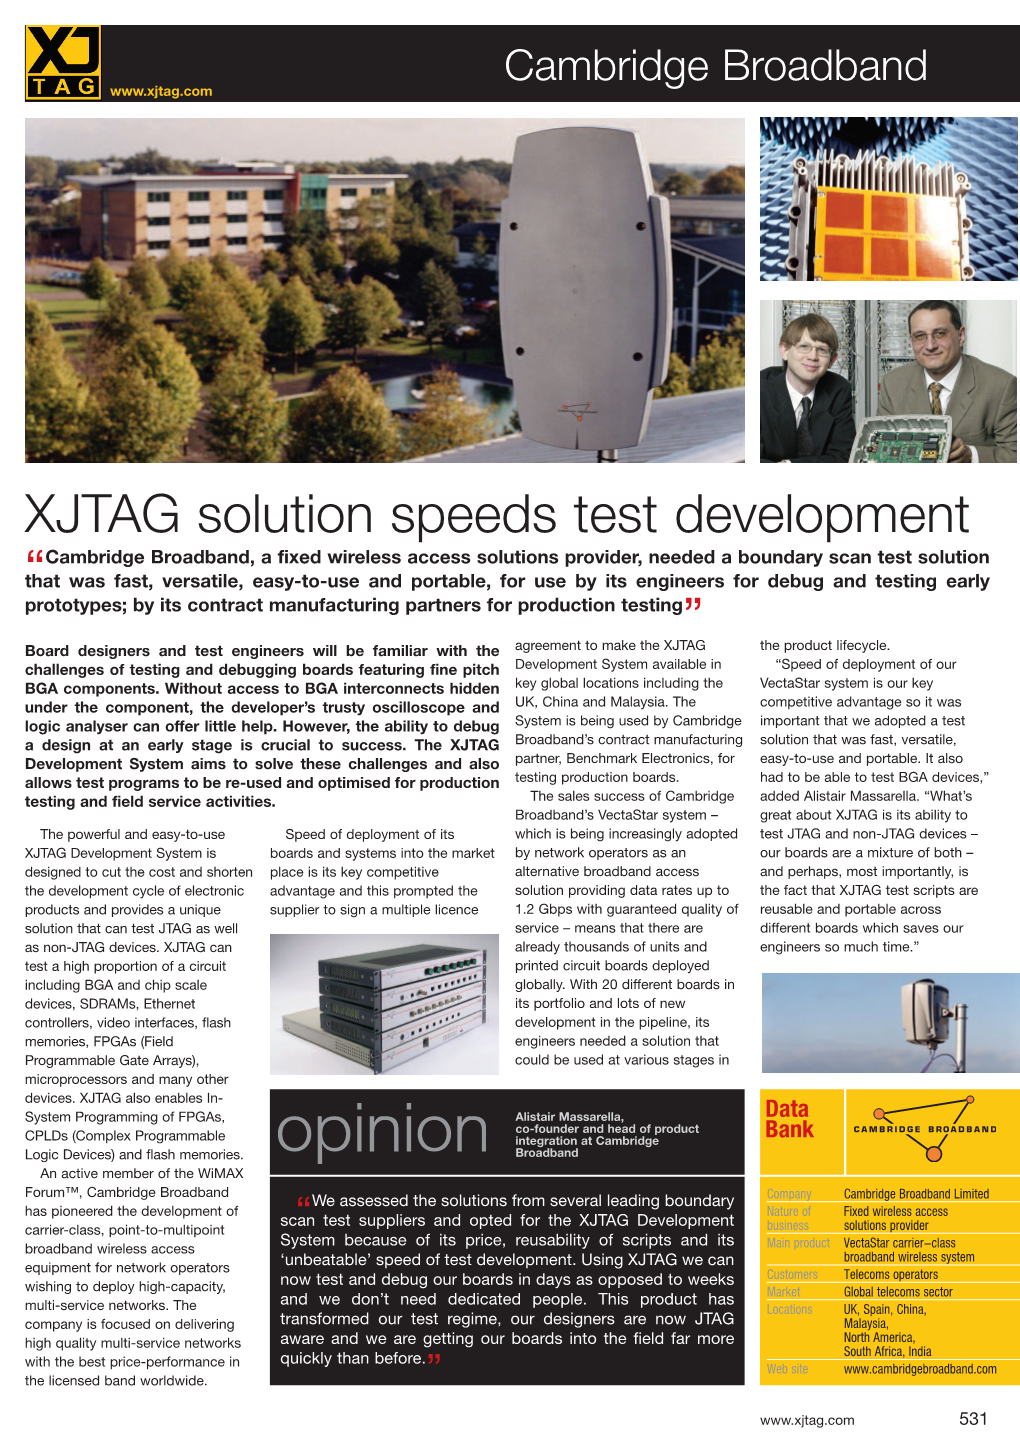 XJTAG Solution Speeds Test Development